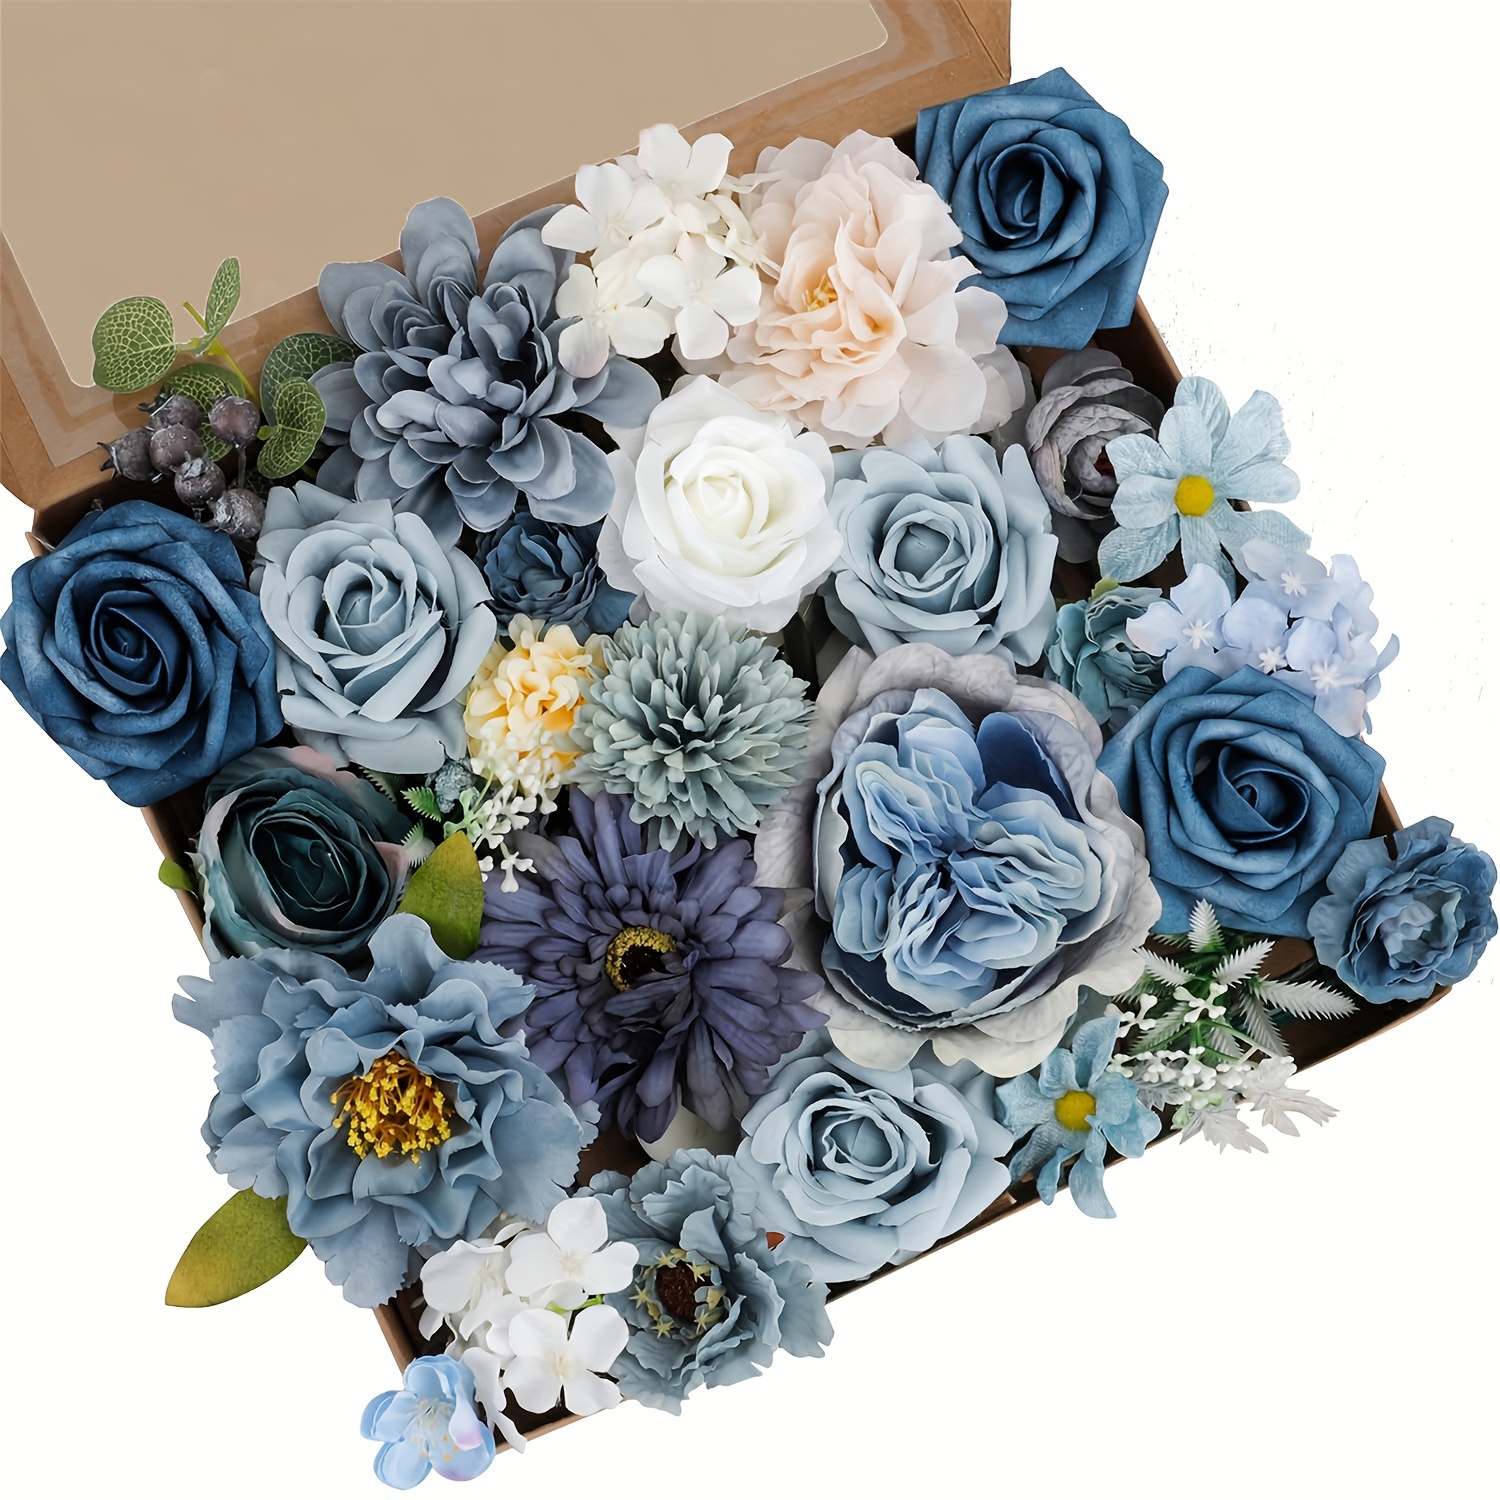 

1pc Artificial Flowers Combo Box Set, Dusty Blue Flowers Fake Wedding Flowers Bulk For Diy Wedding Bouquets Centerpieces Arrangements Bridal Shower Table Decorations